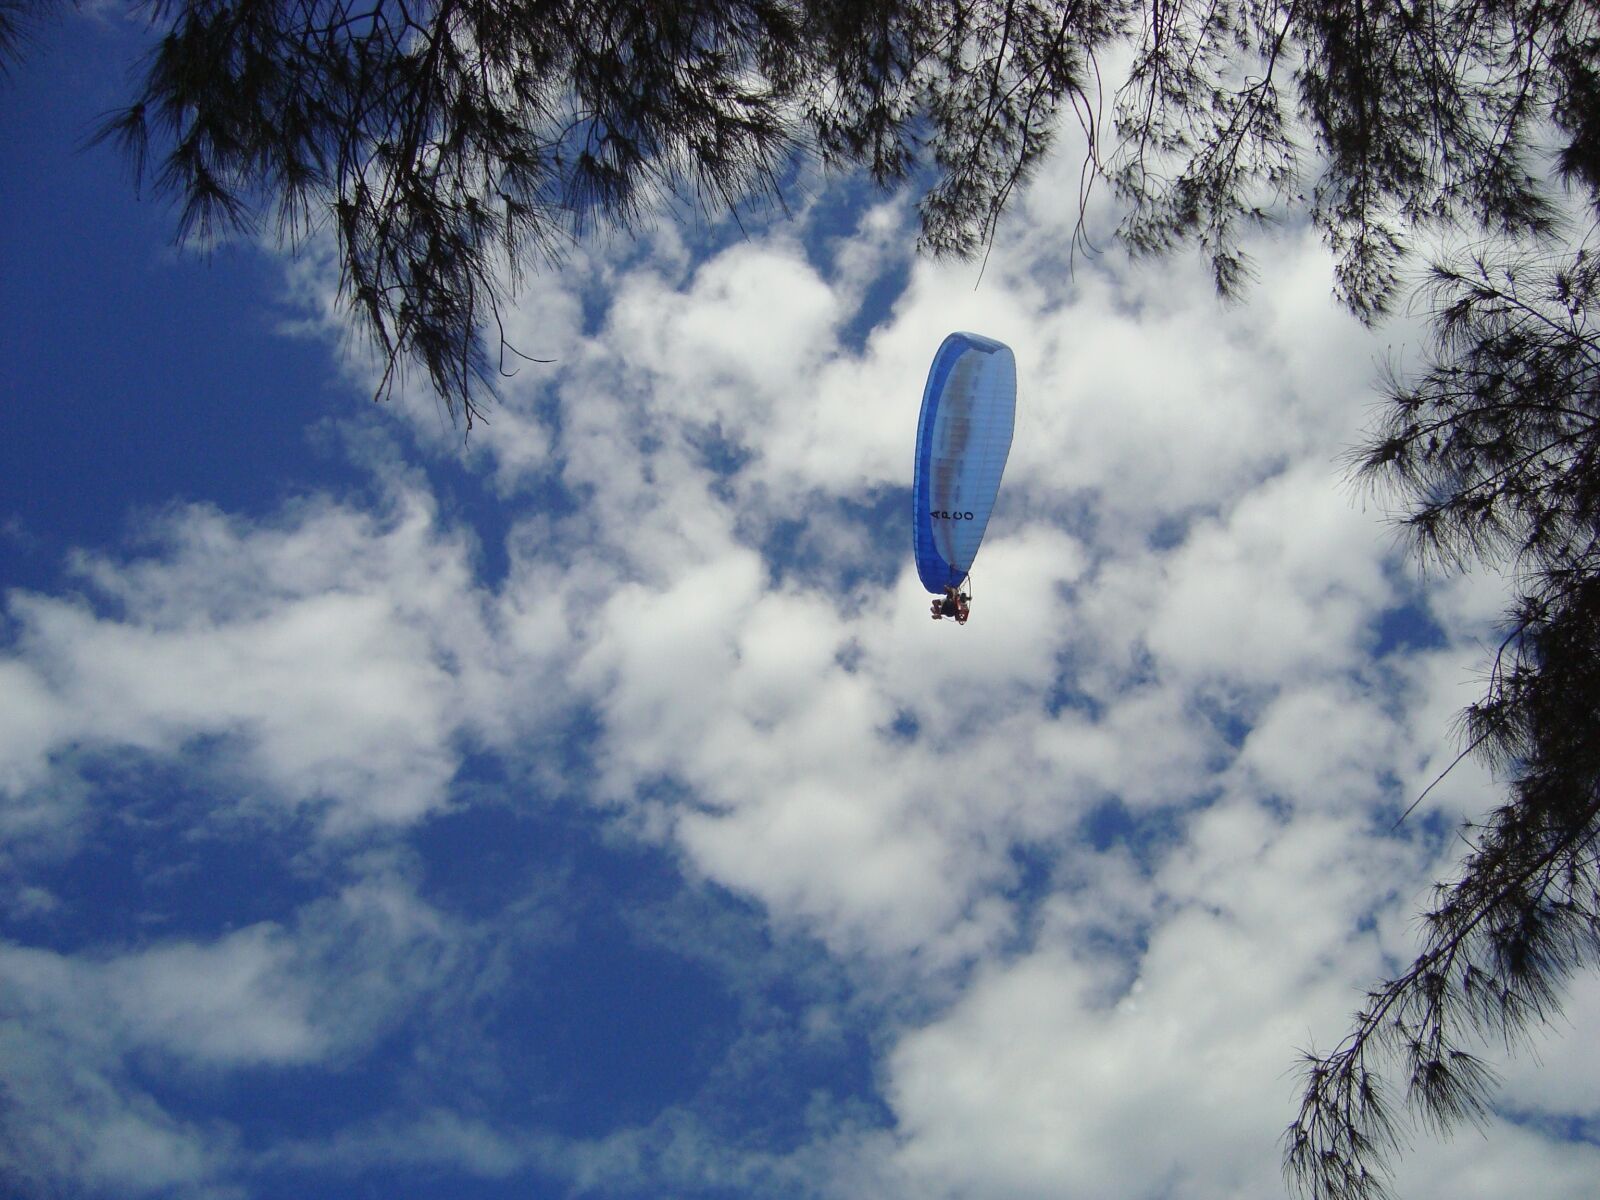 Sony Cyber-shot DSC-W110 sample photo. Parachute, sky, brazil photography